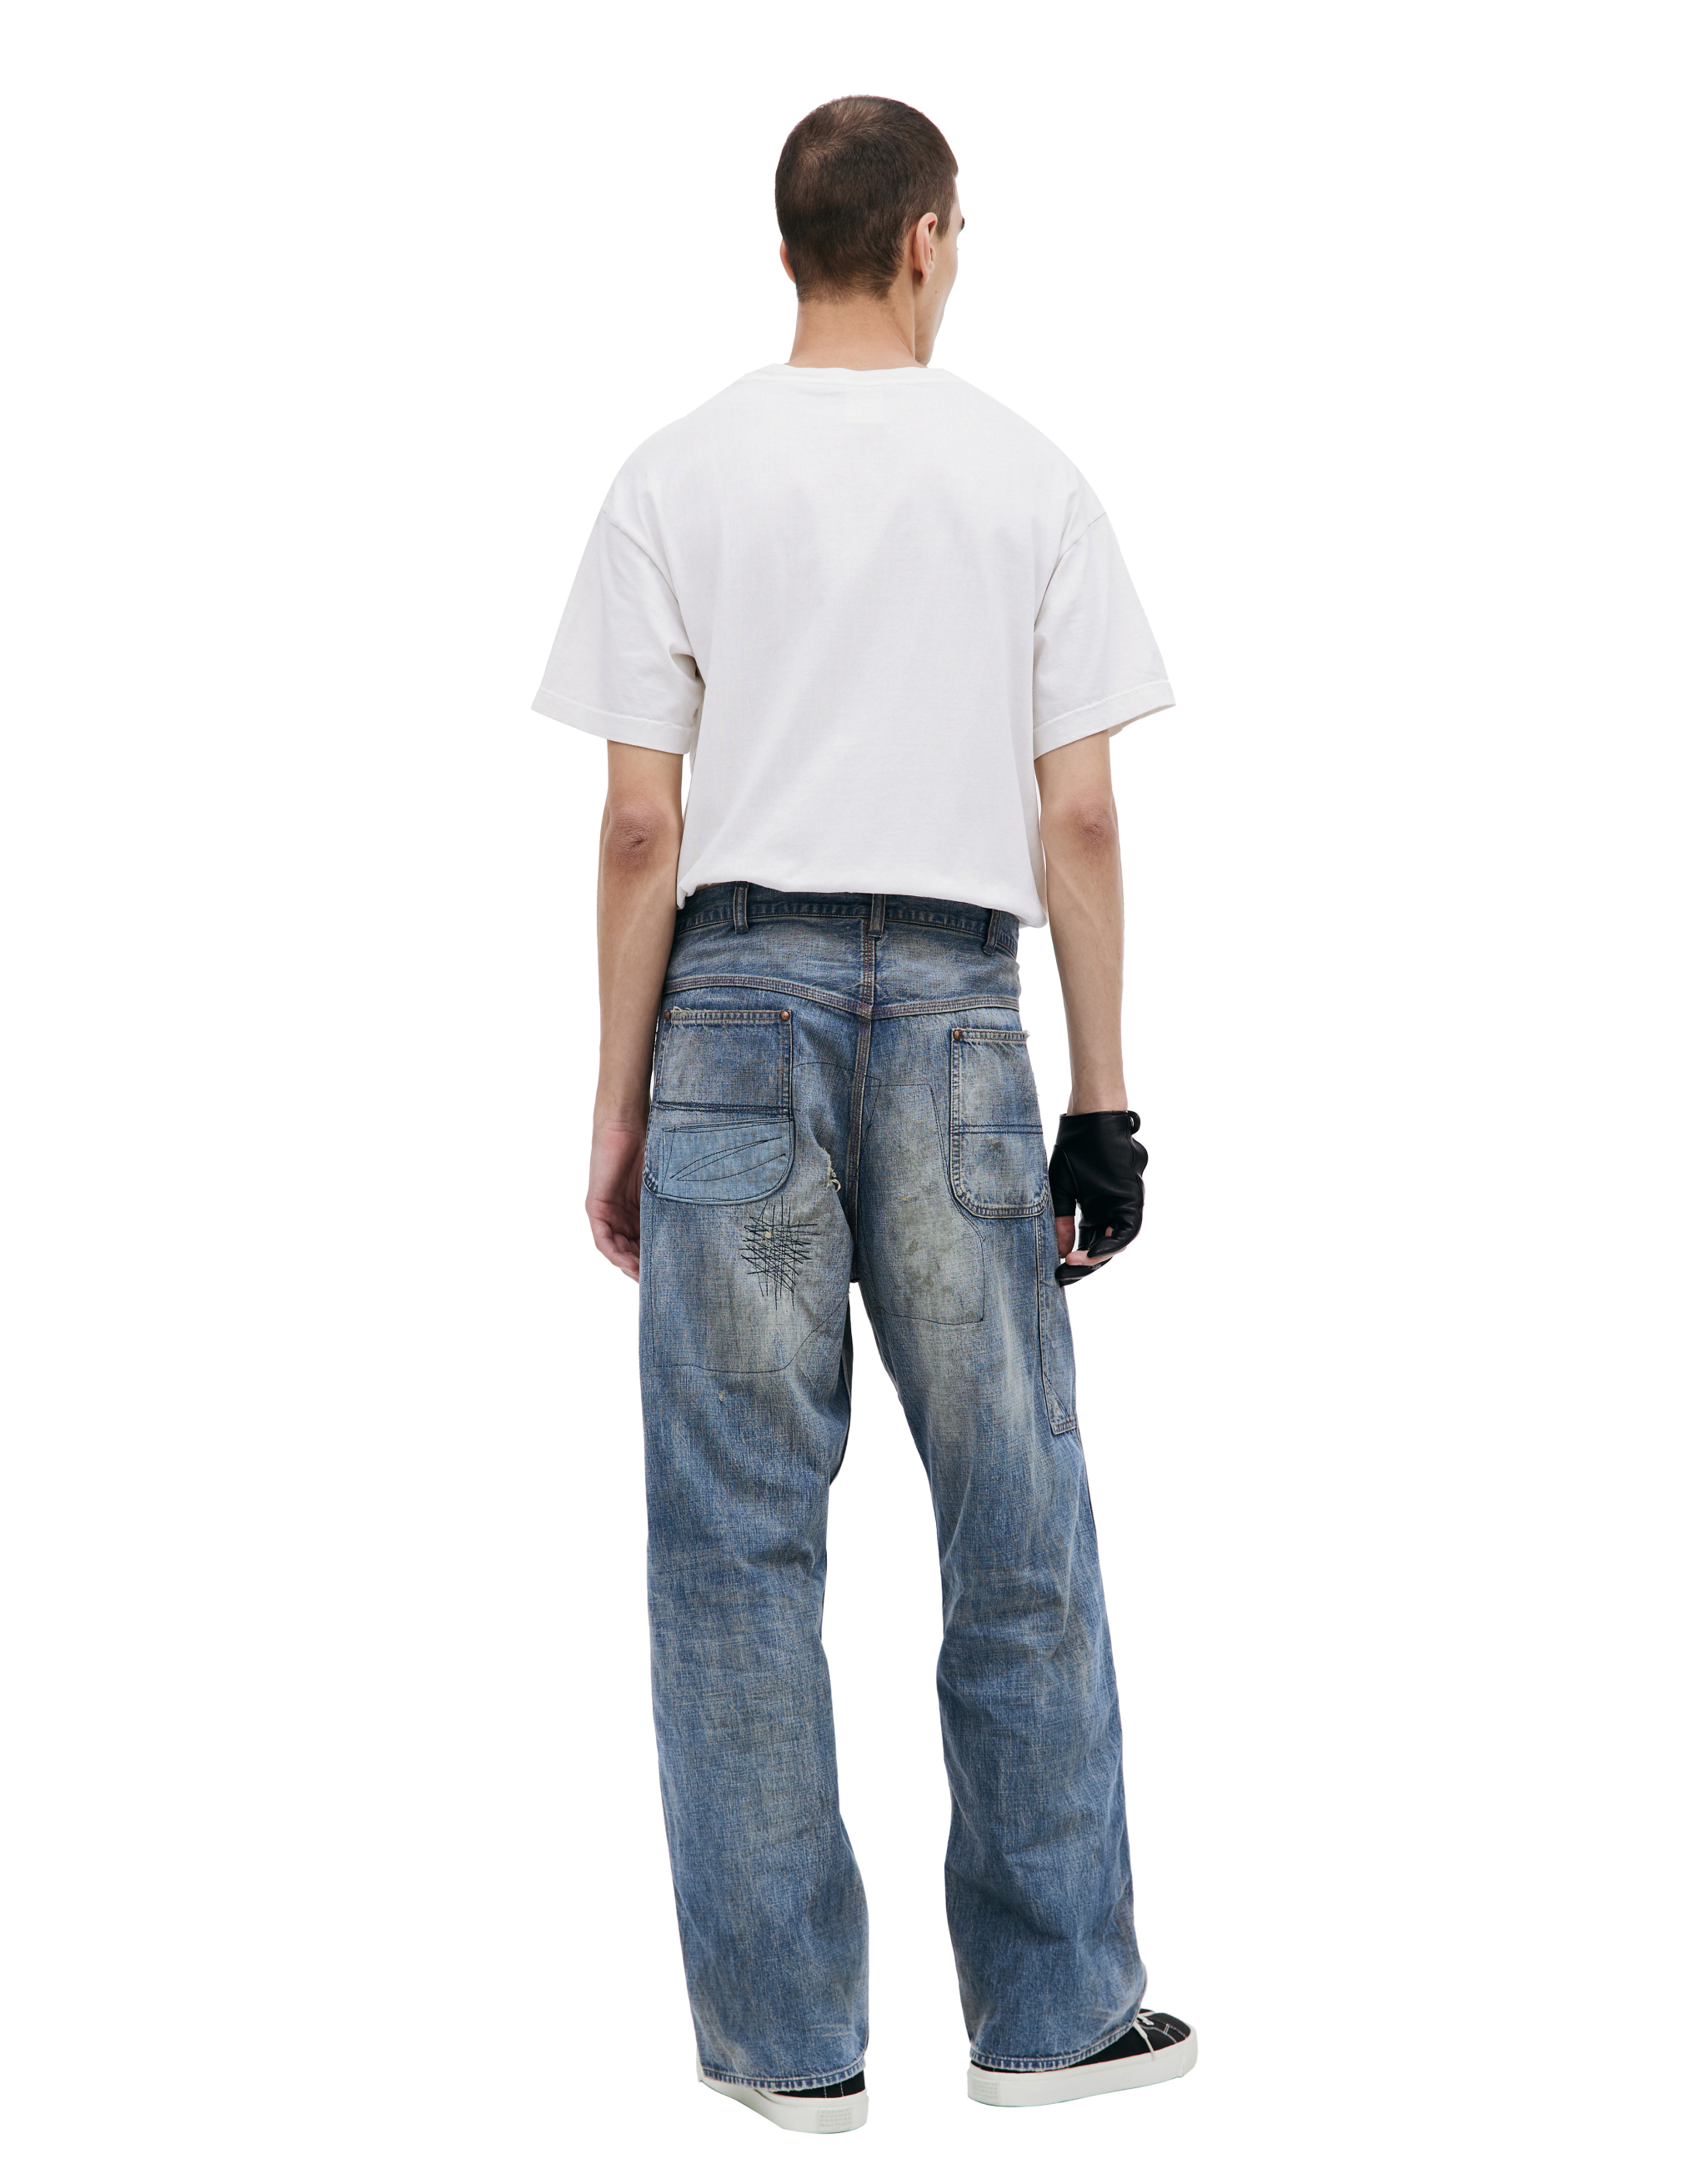 Прямые джинсы с патчами Saint Michael SM-A23-0000-038, размер M - фото 3